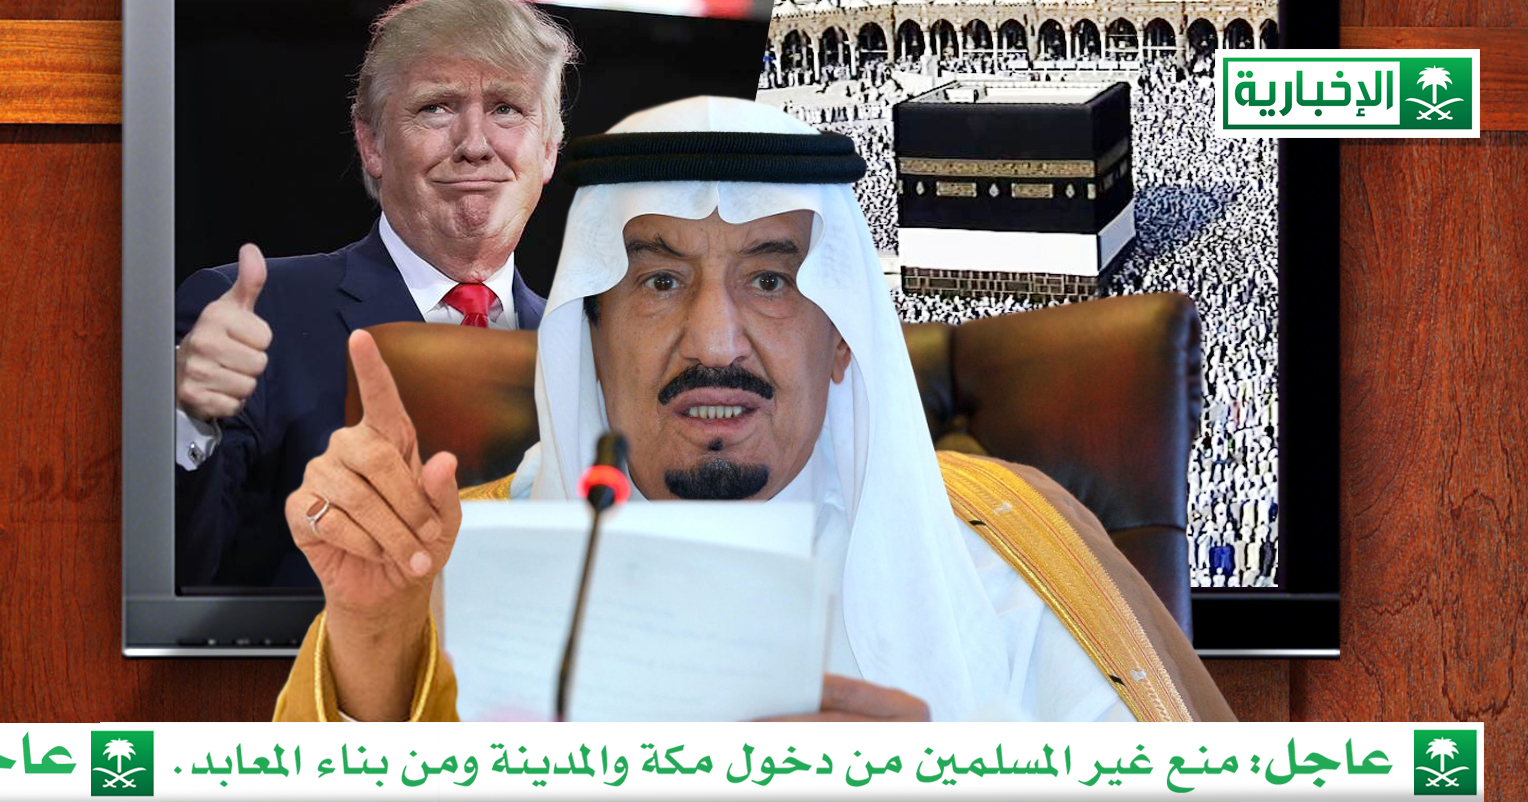 صورة السعودية ترد على منع ترامب دخول مسلمين للولايات المتحدة بمنعها غير المسلمين من دخول مكة والمدينة أو بناء معابدهم على أراضيها